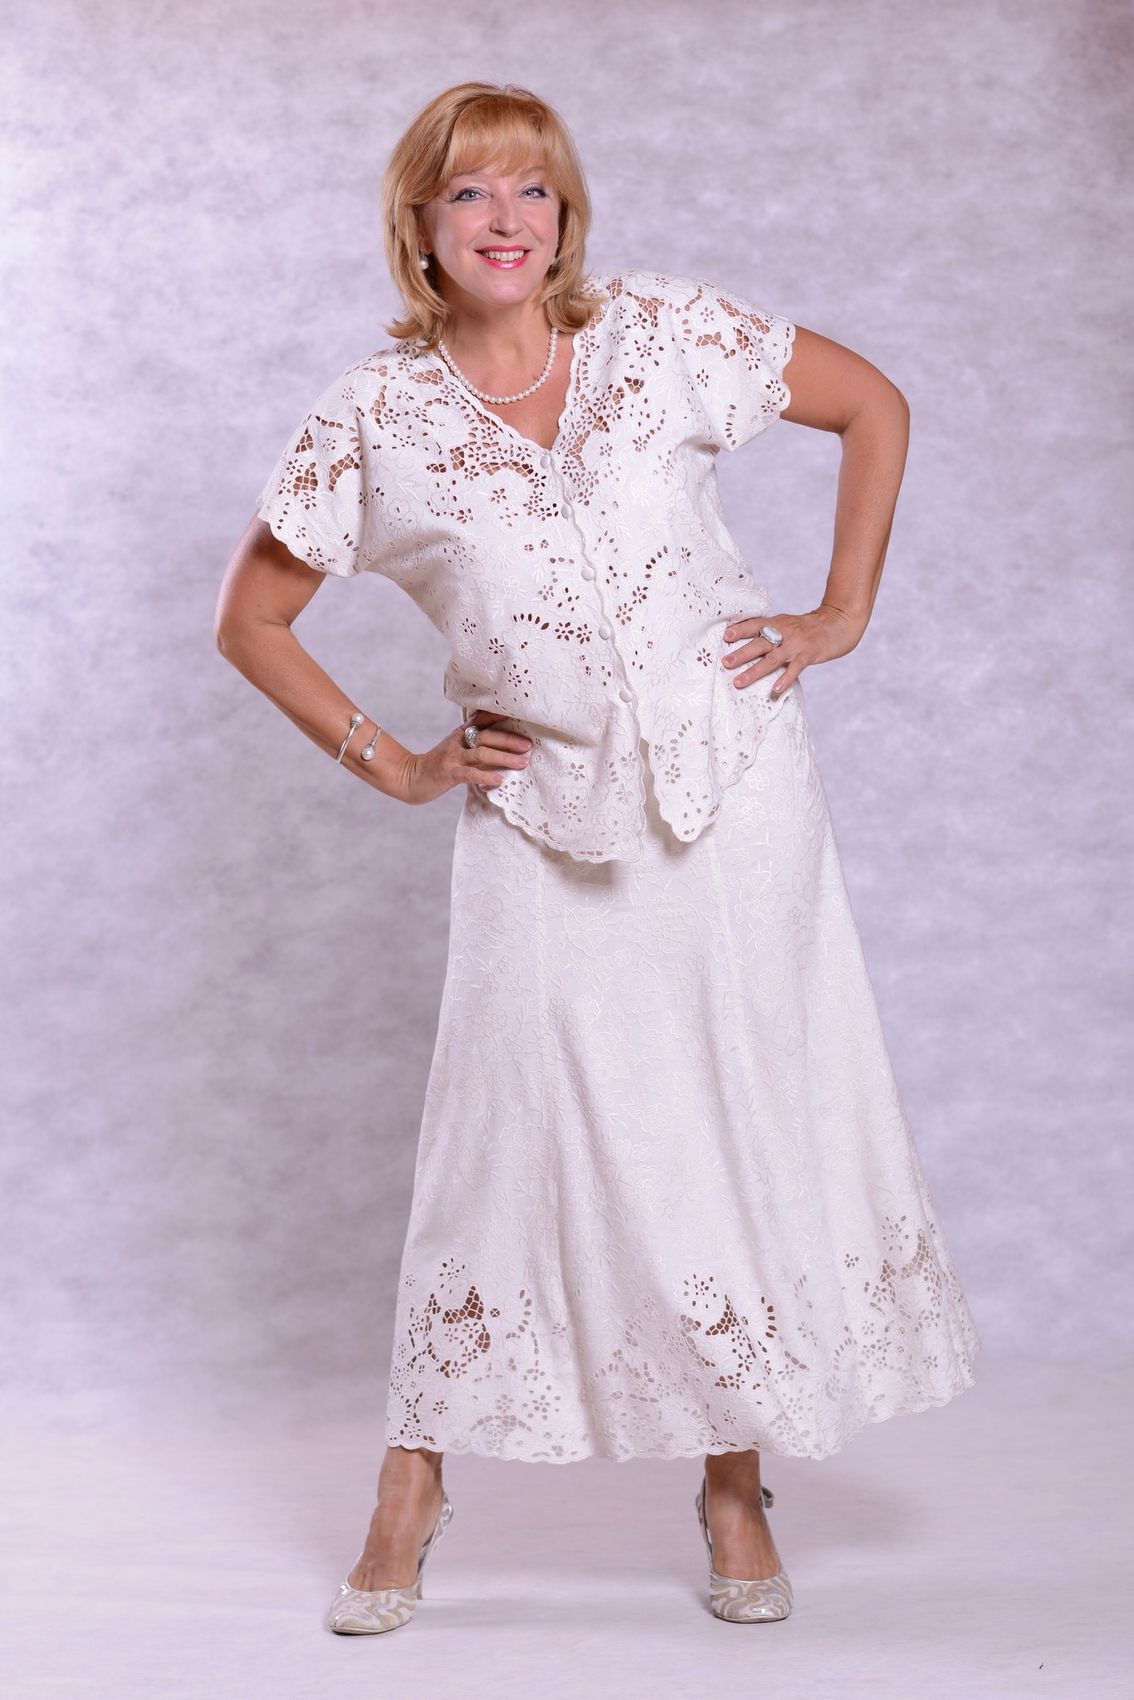 Белое платье для женщины 50 лет